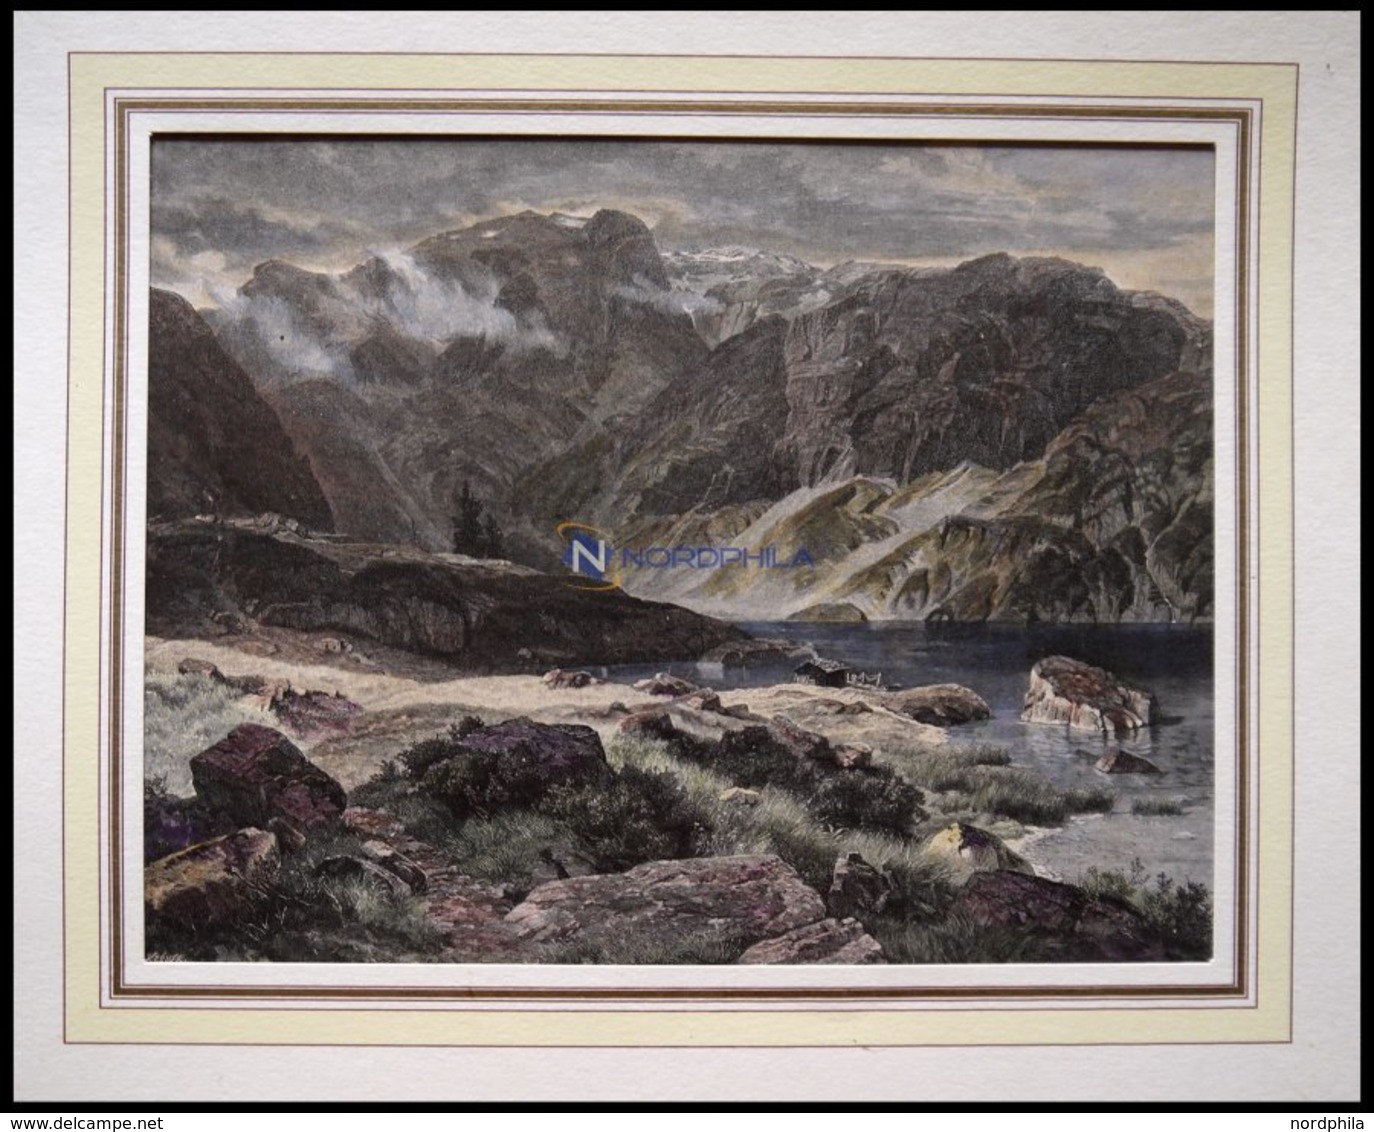 BAYERN: Der Burgsee, Kolorierter Holzstich Nach Steffan Um 1880 - Litografia